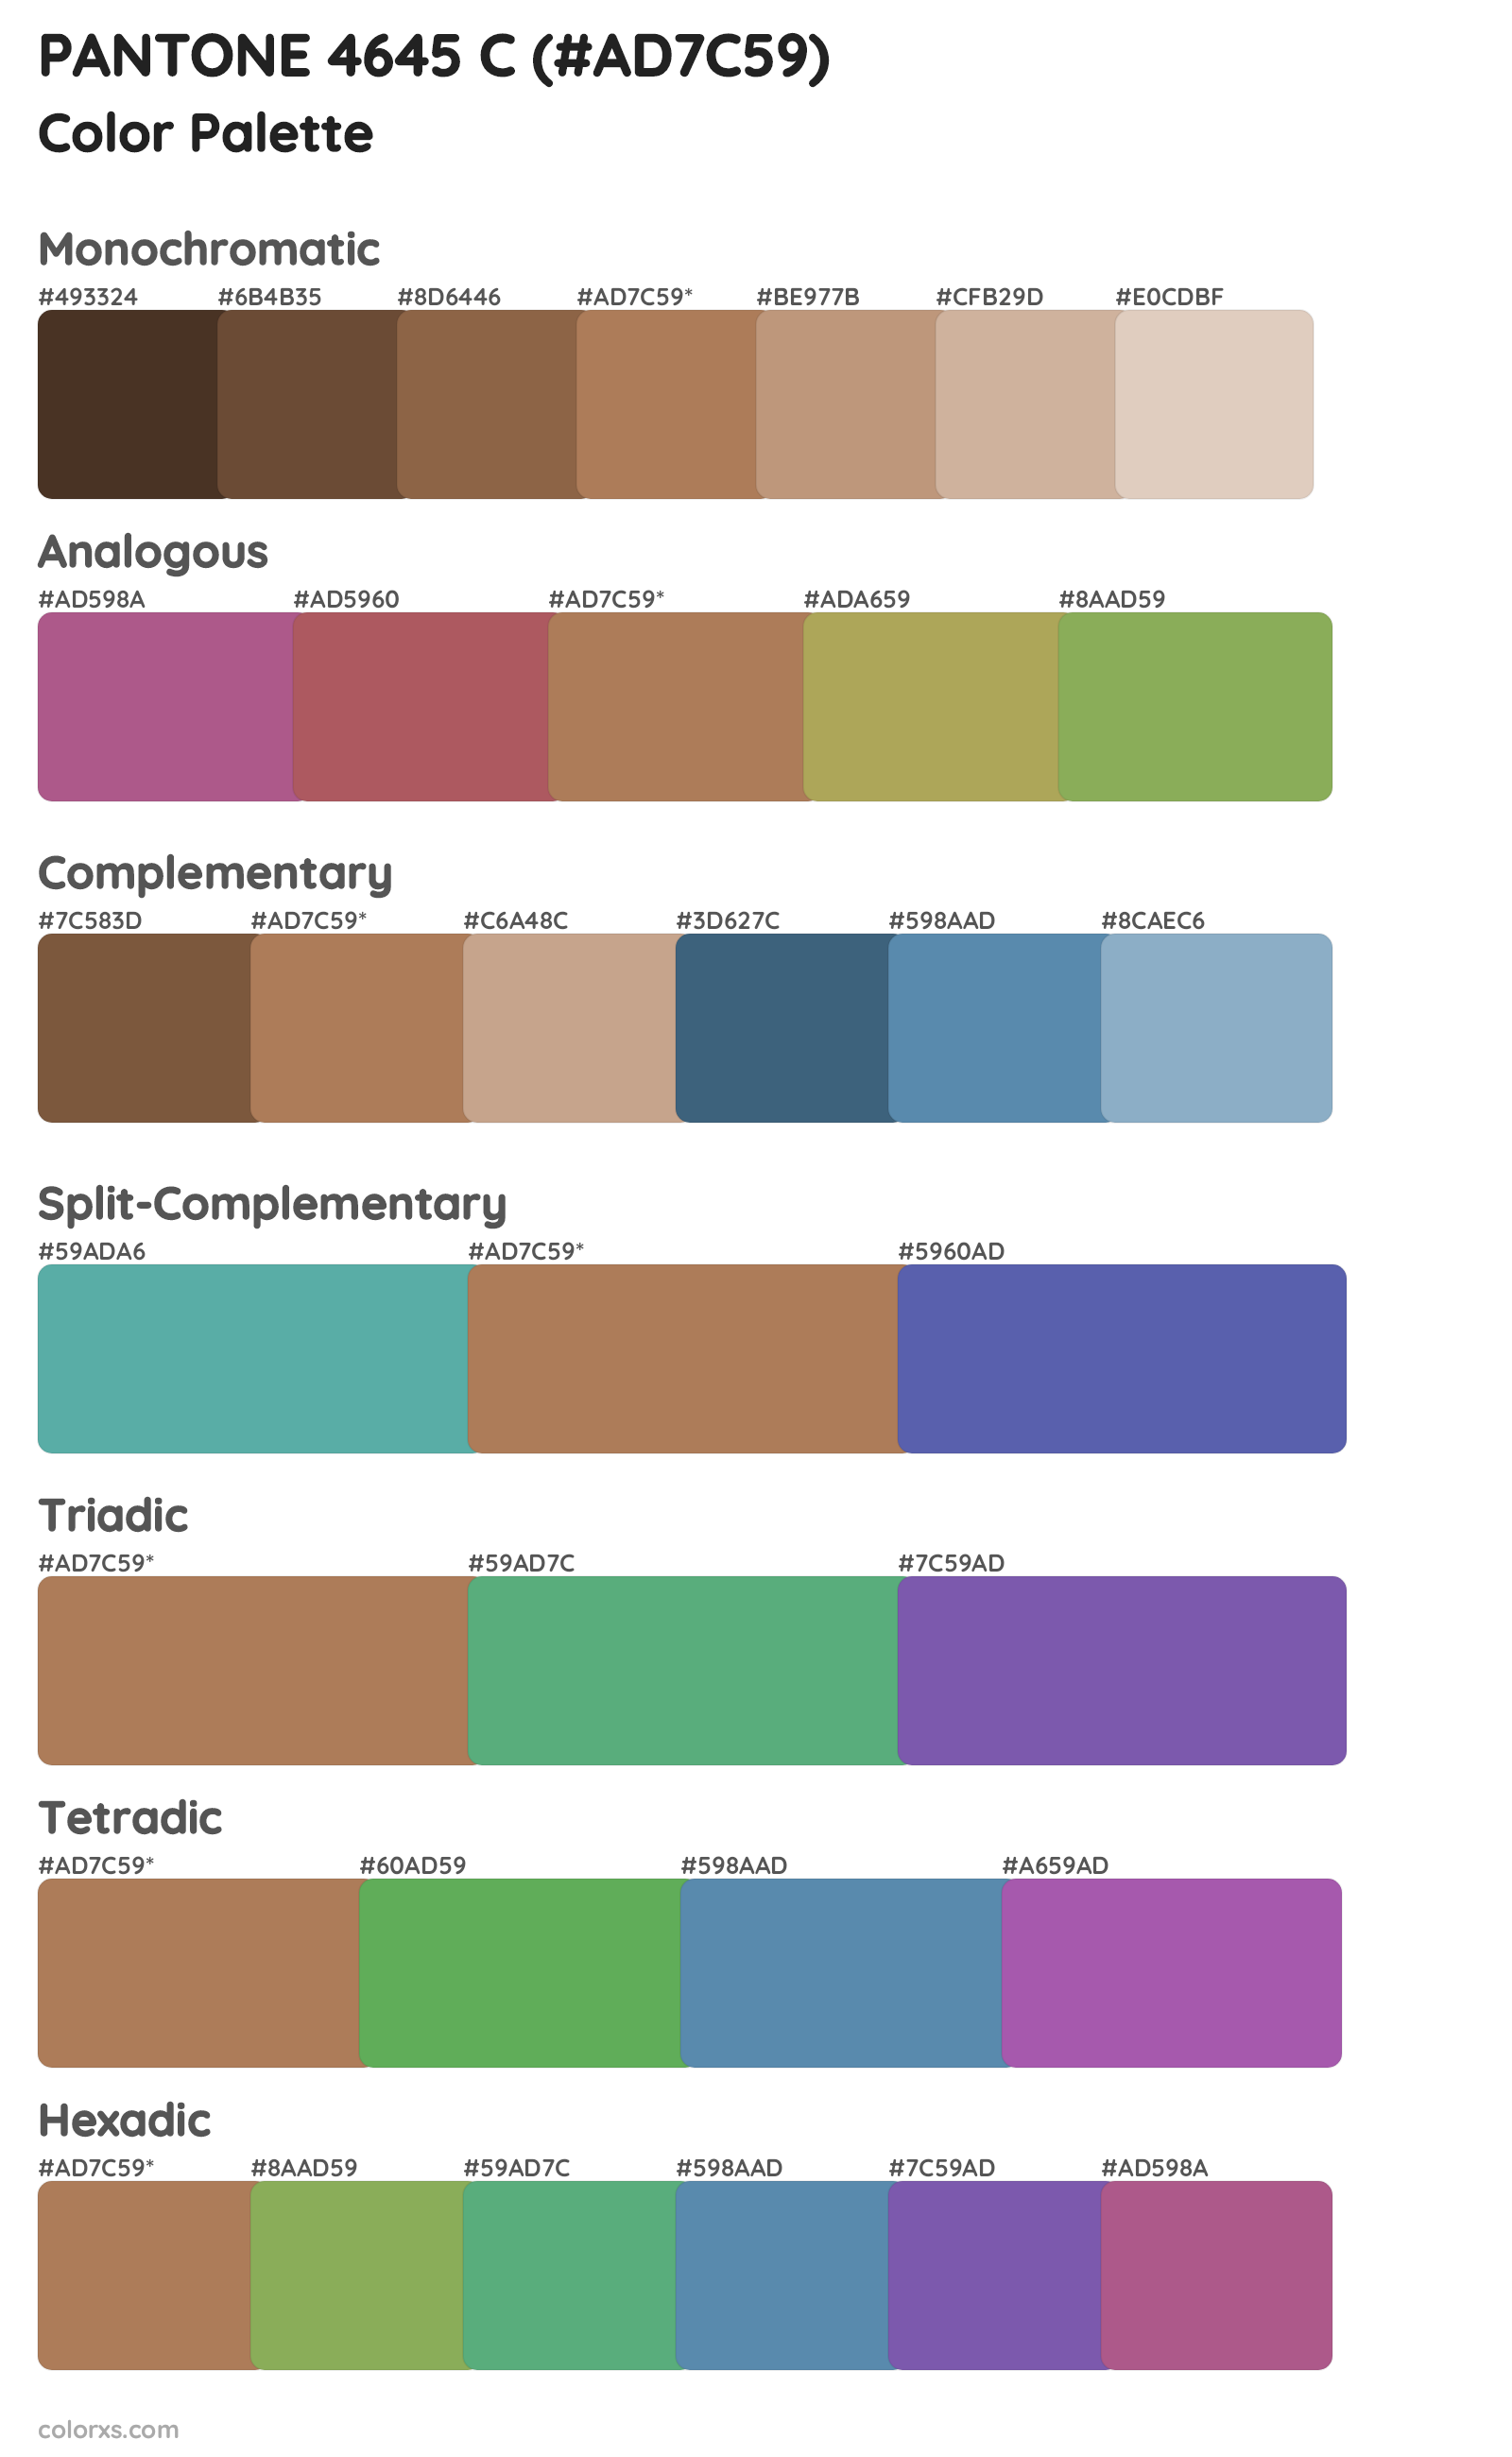 PANTONE 4645 C Color Scheme Palettes